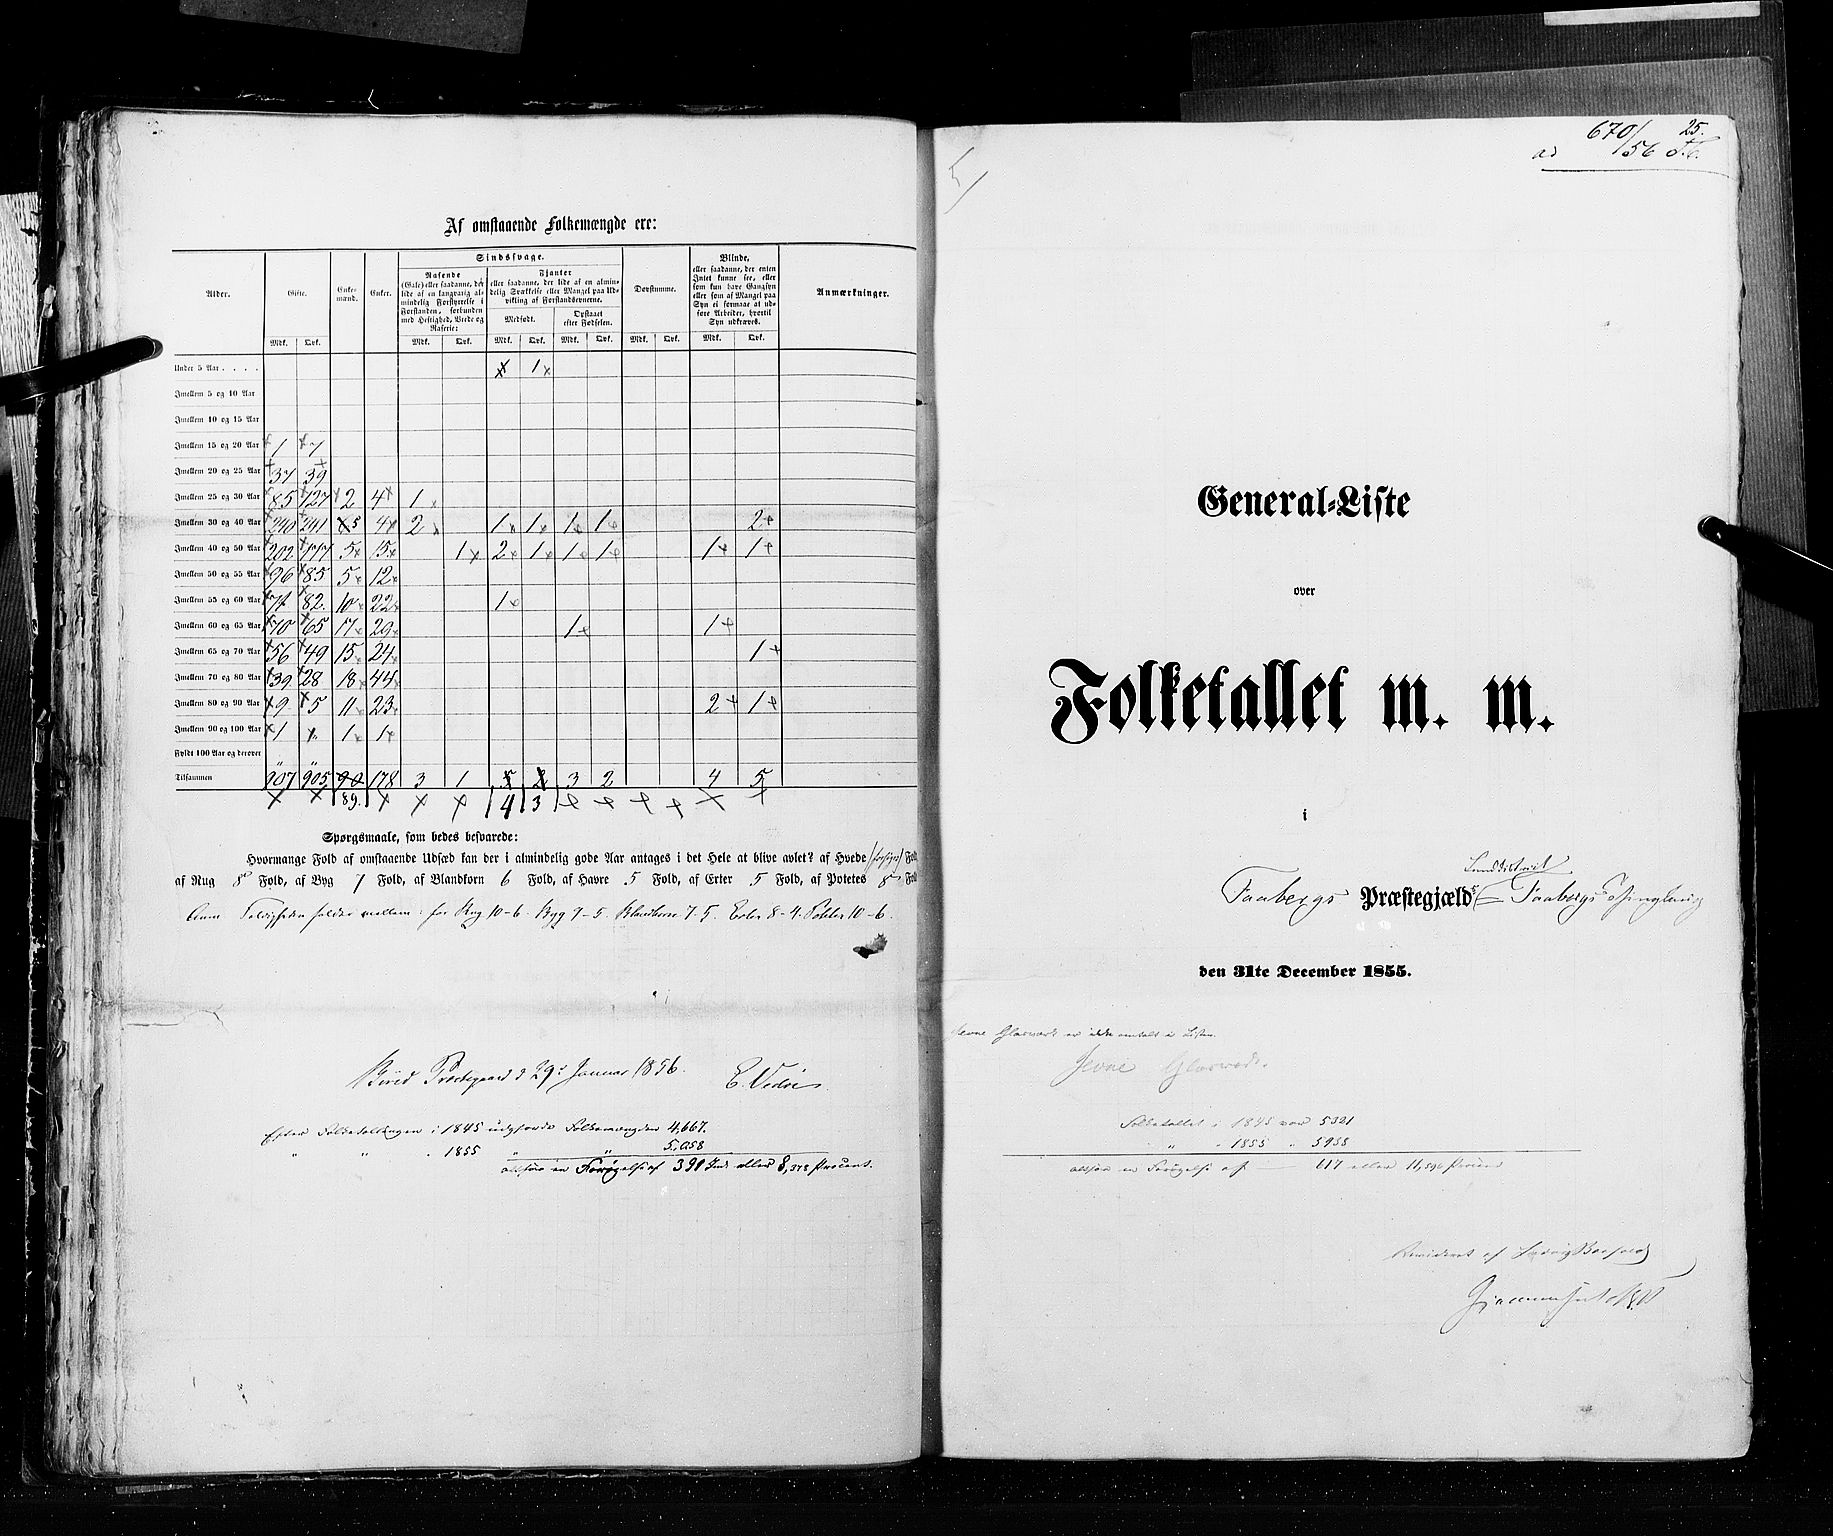 RA, Folketellingen 1855, bind 2: Kristians amt, Buskerud amt og Jarlsberg og Larvik amt, 1855, s. 25